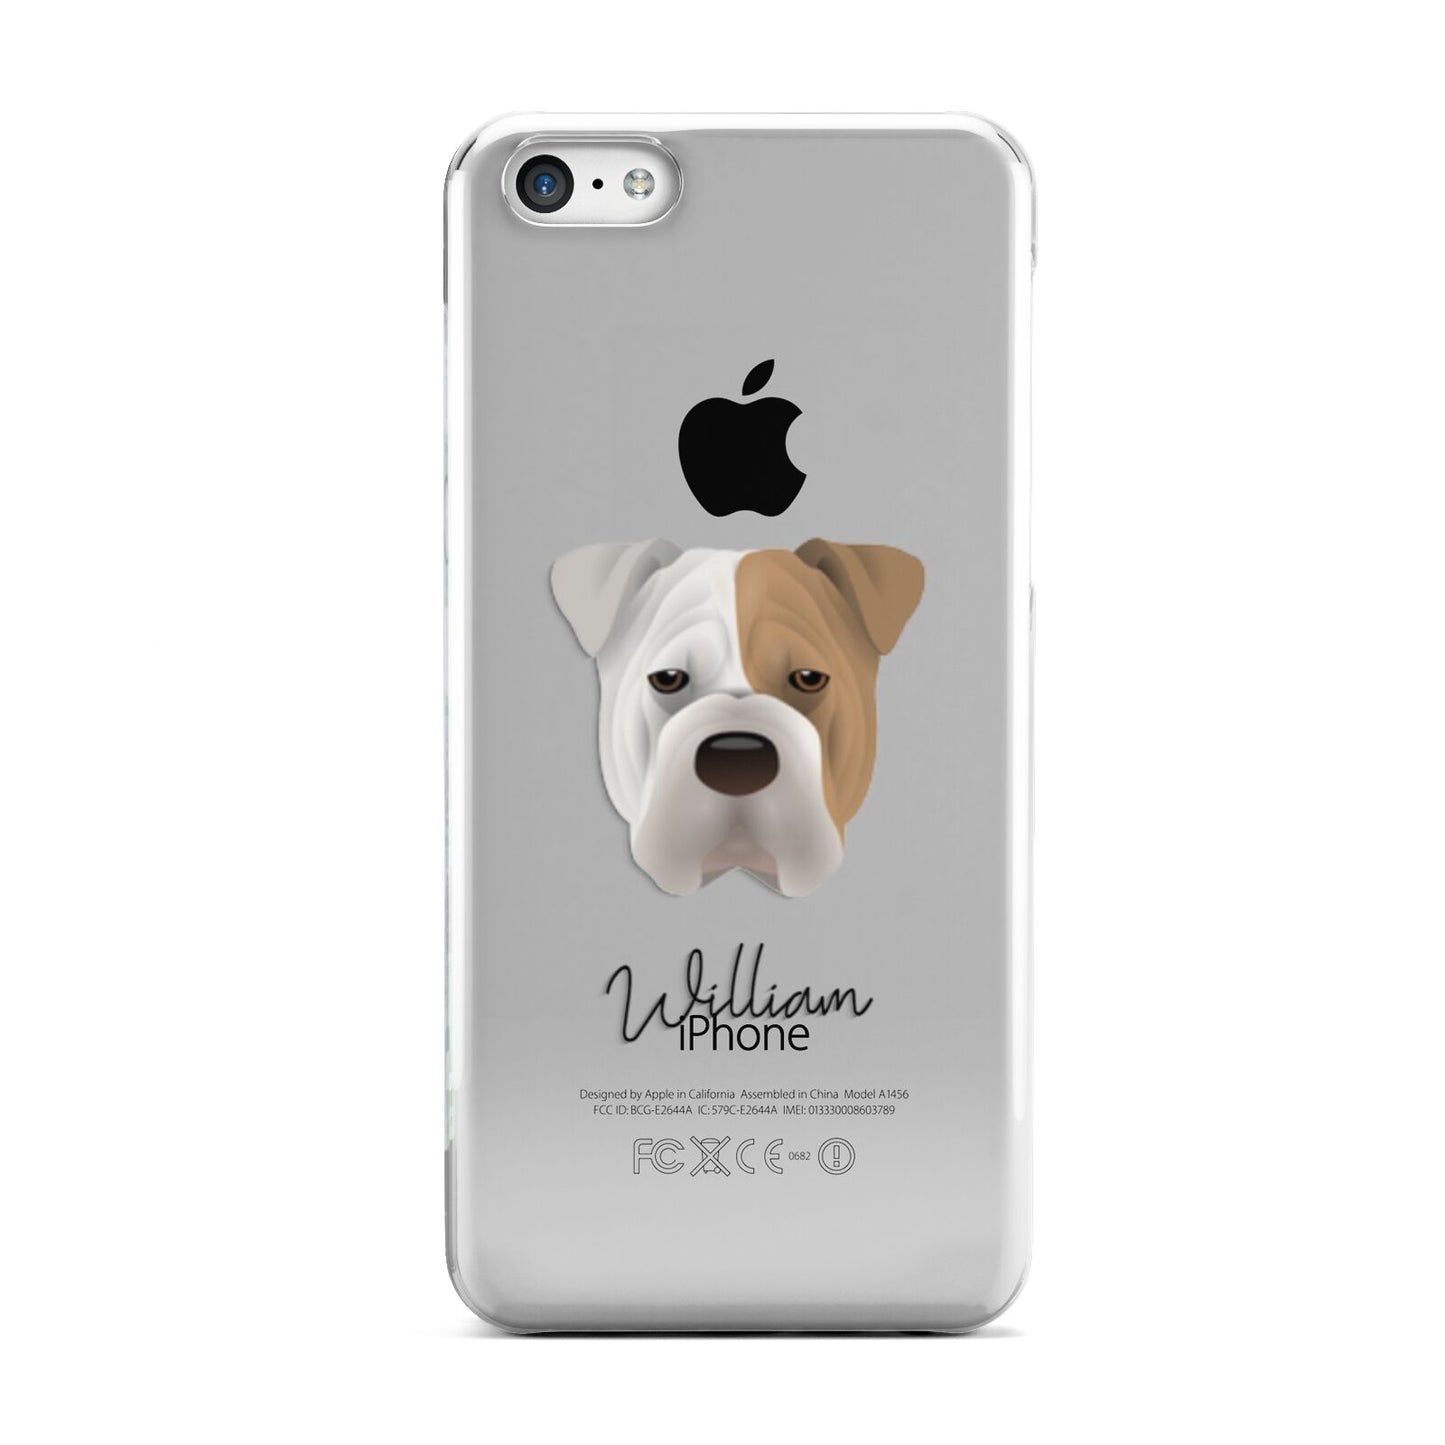 Bull Pei Personalised Apple iPhone 5c Case